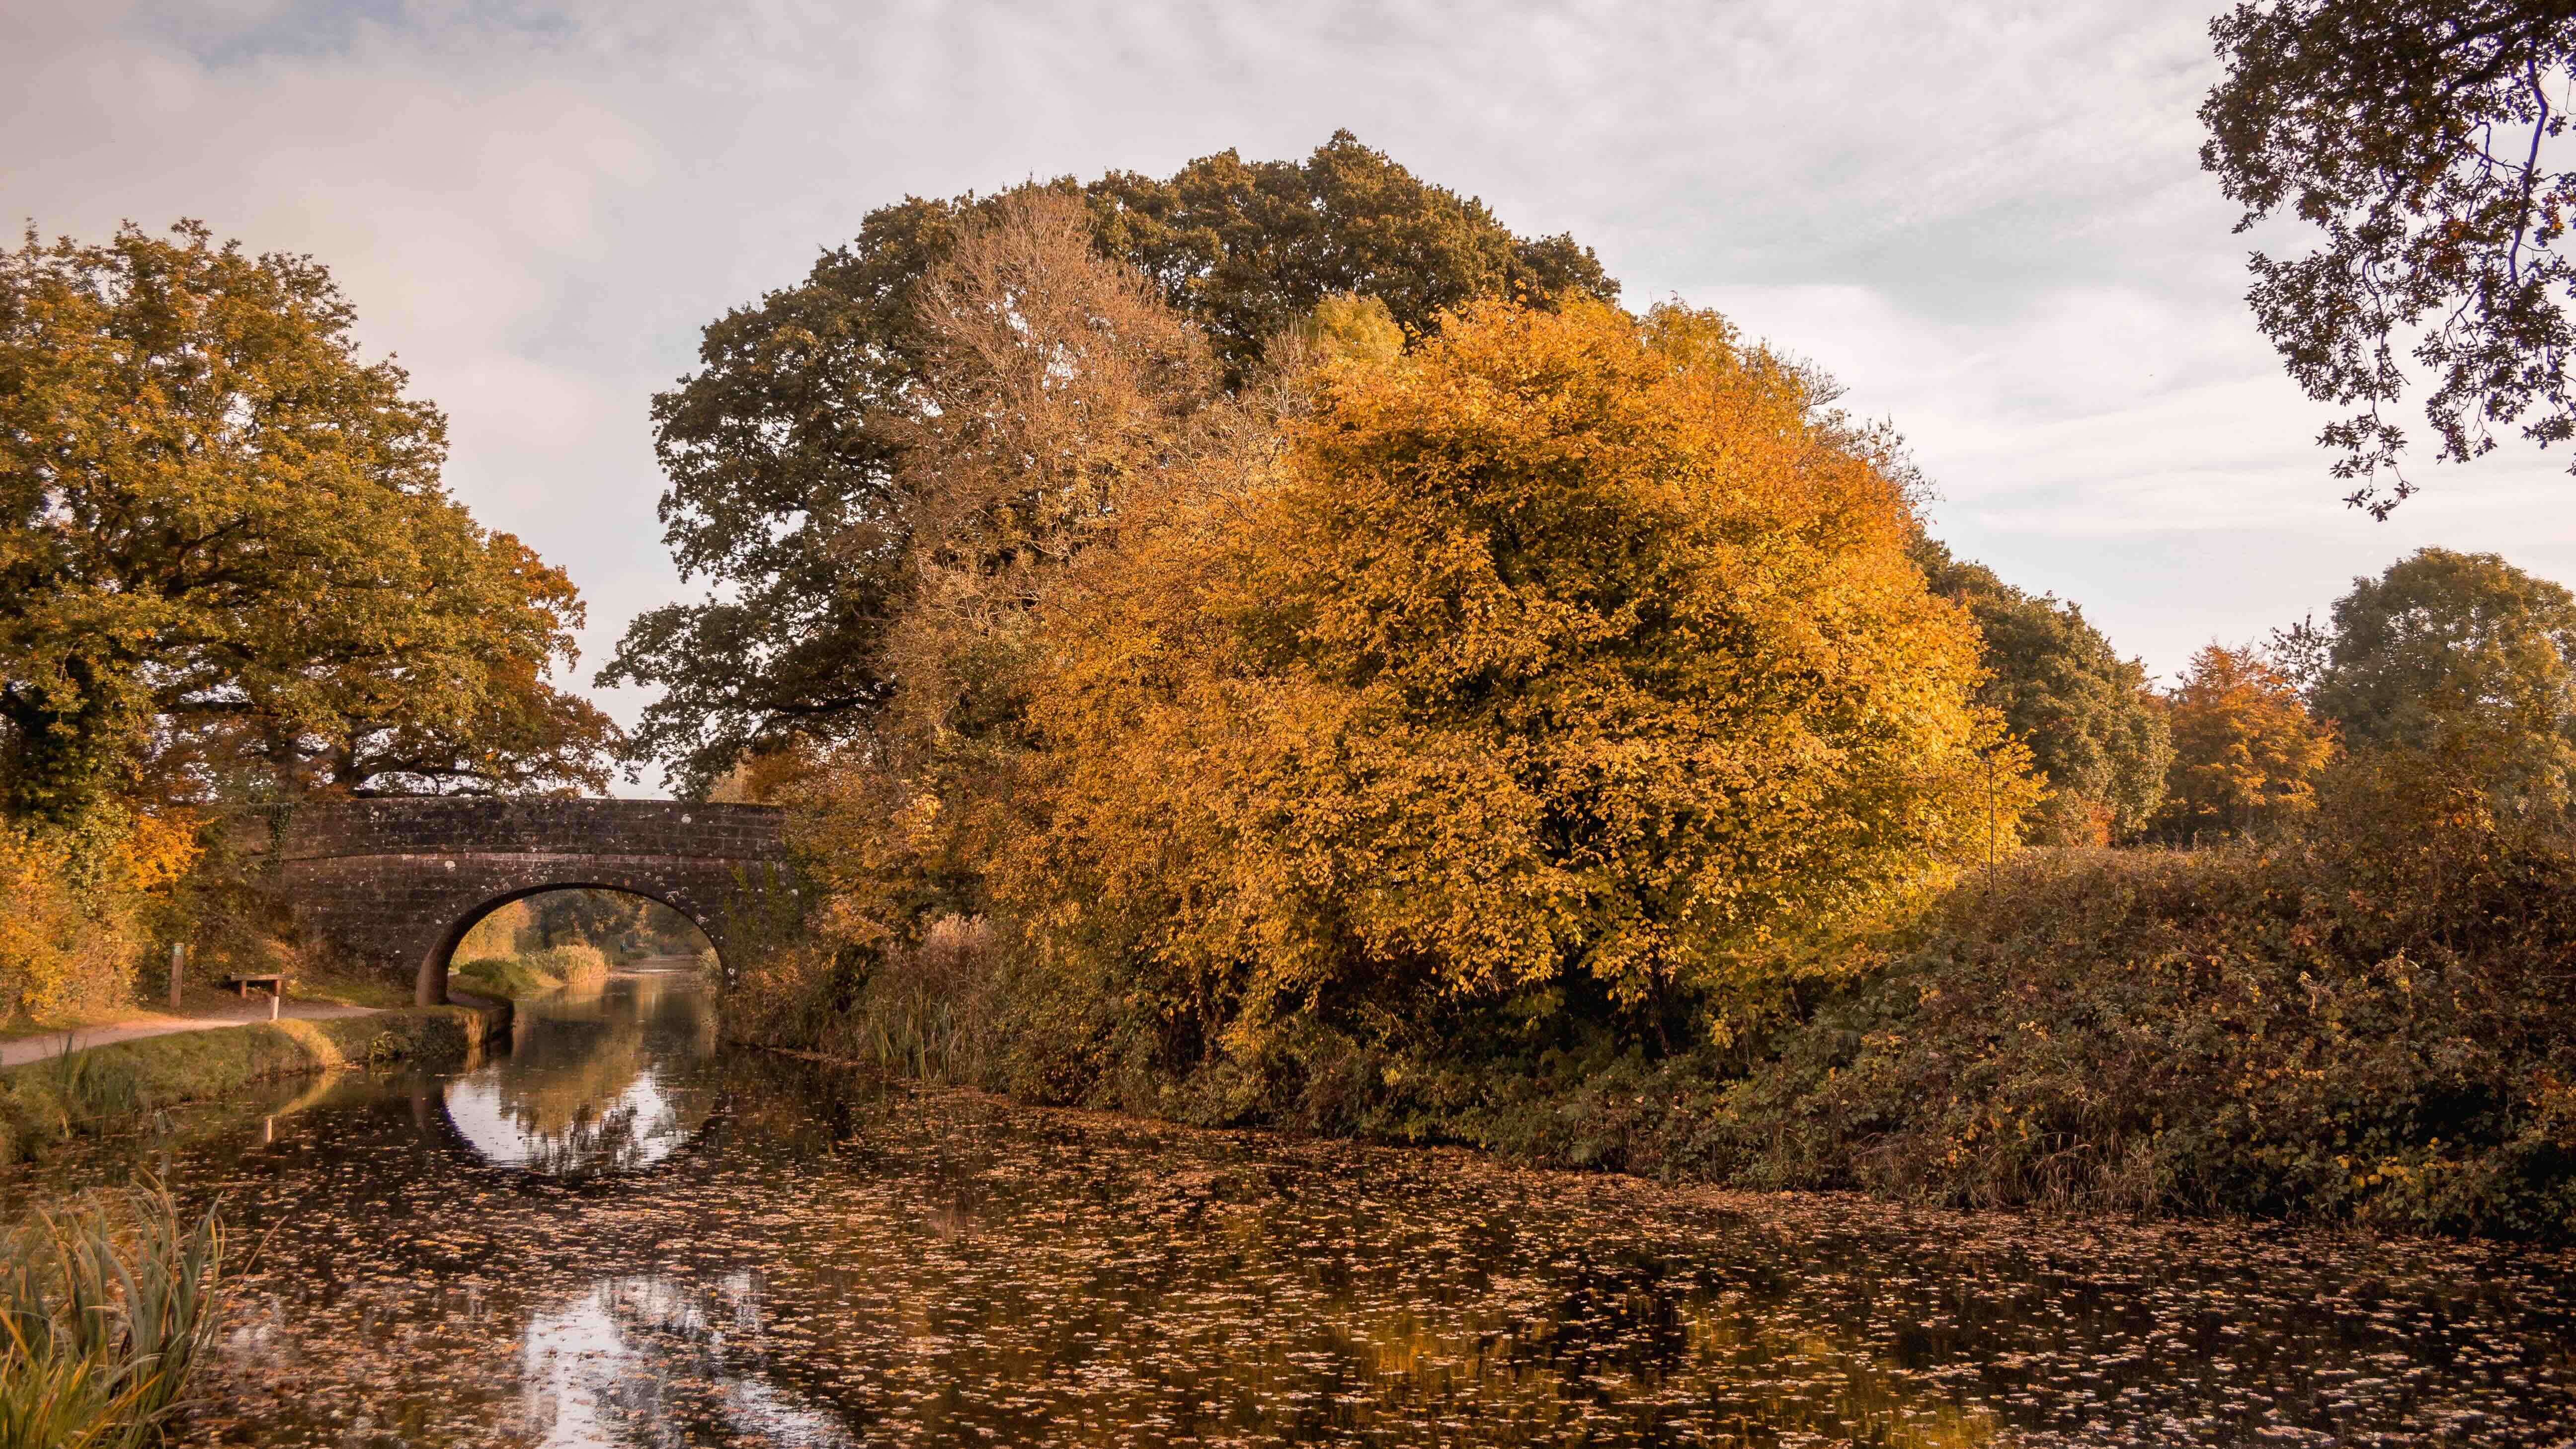 An autumnal canal